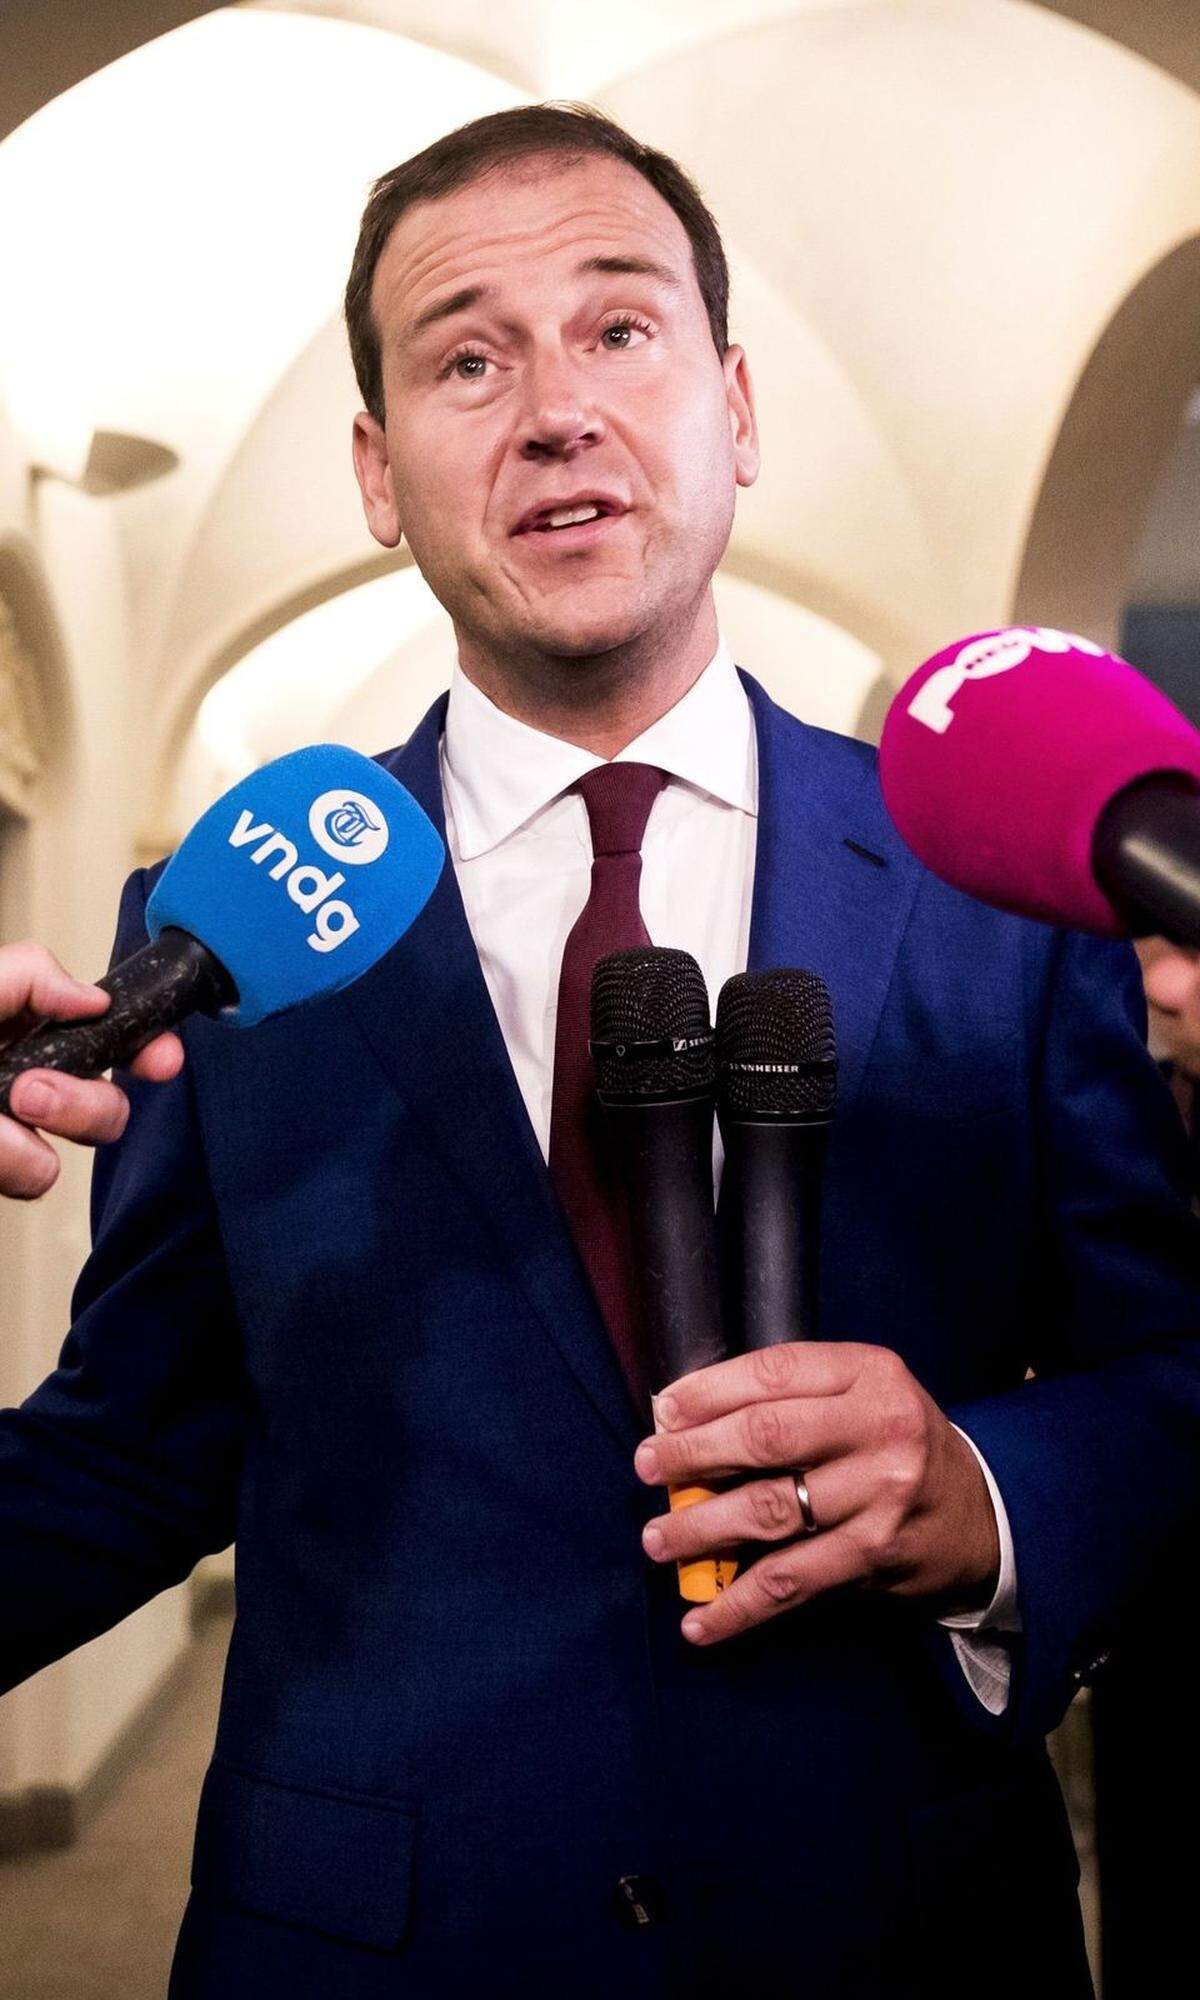 In Nordeuropa stellen die Sozialdemokratischen Parteien lediglich in Schweden den Ministerpräsidenten. Stefan Löfven steuert das skandinavische Land seit 2015 mithilfe einer rot-grünen Minderheitsregierung, die von der bürgerlichen Allianz toleriert wird. Grund dafür ist die blockübergreifende Isolation der am rechten Rand operierenden Schwedendemokraten. In Dänemark und Finnland drücken die Sozialdemokraten seit 2015, in Island und Norwegen seit 2013 die Oppositionsbank. Bei der Wahl in Island Ende Oktober konnten die Sozialdemokraten sich allerdings auf rund 12 Prozent verdoppeln, eine Regierungsbeteiligung scheint greifbar. Im Baltikum regieren die Sozialdemokraten zurzeit als Juniorpartner in Estland und in Litauen mit. In Lettland bildet die russisch dominierte Sozialdemokratische Unionspartei "Harmonie" seit sechs Jahren die stärkste Fraktion im Parlament. Weil sie von den Parteien der lettischen Bevölkerungsmehrheit nicht als Koalitionspartner akzeptiert wird, blieb ihr sowohl 2011 als auch 2014 jeweils nur der Gang in die Opposition.